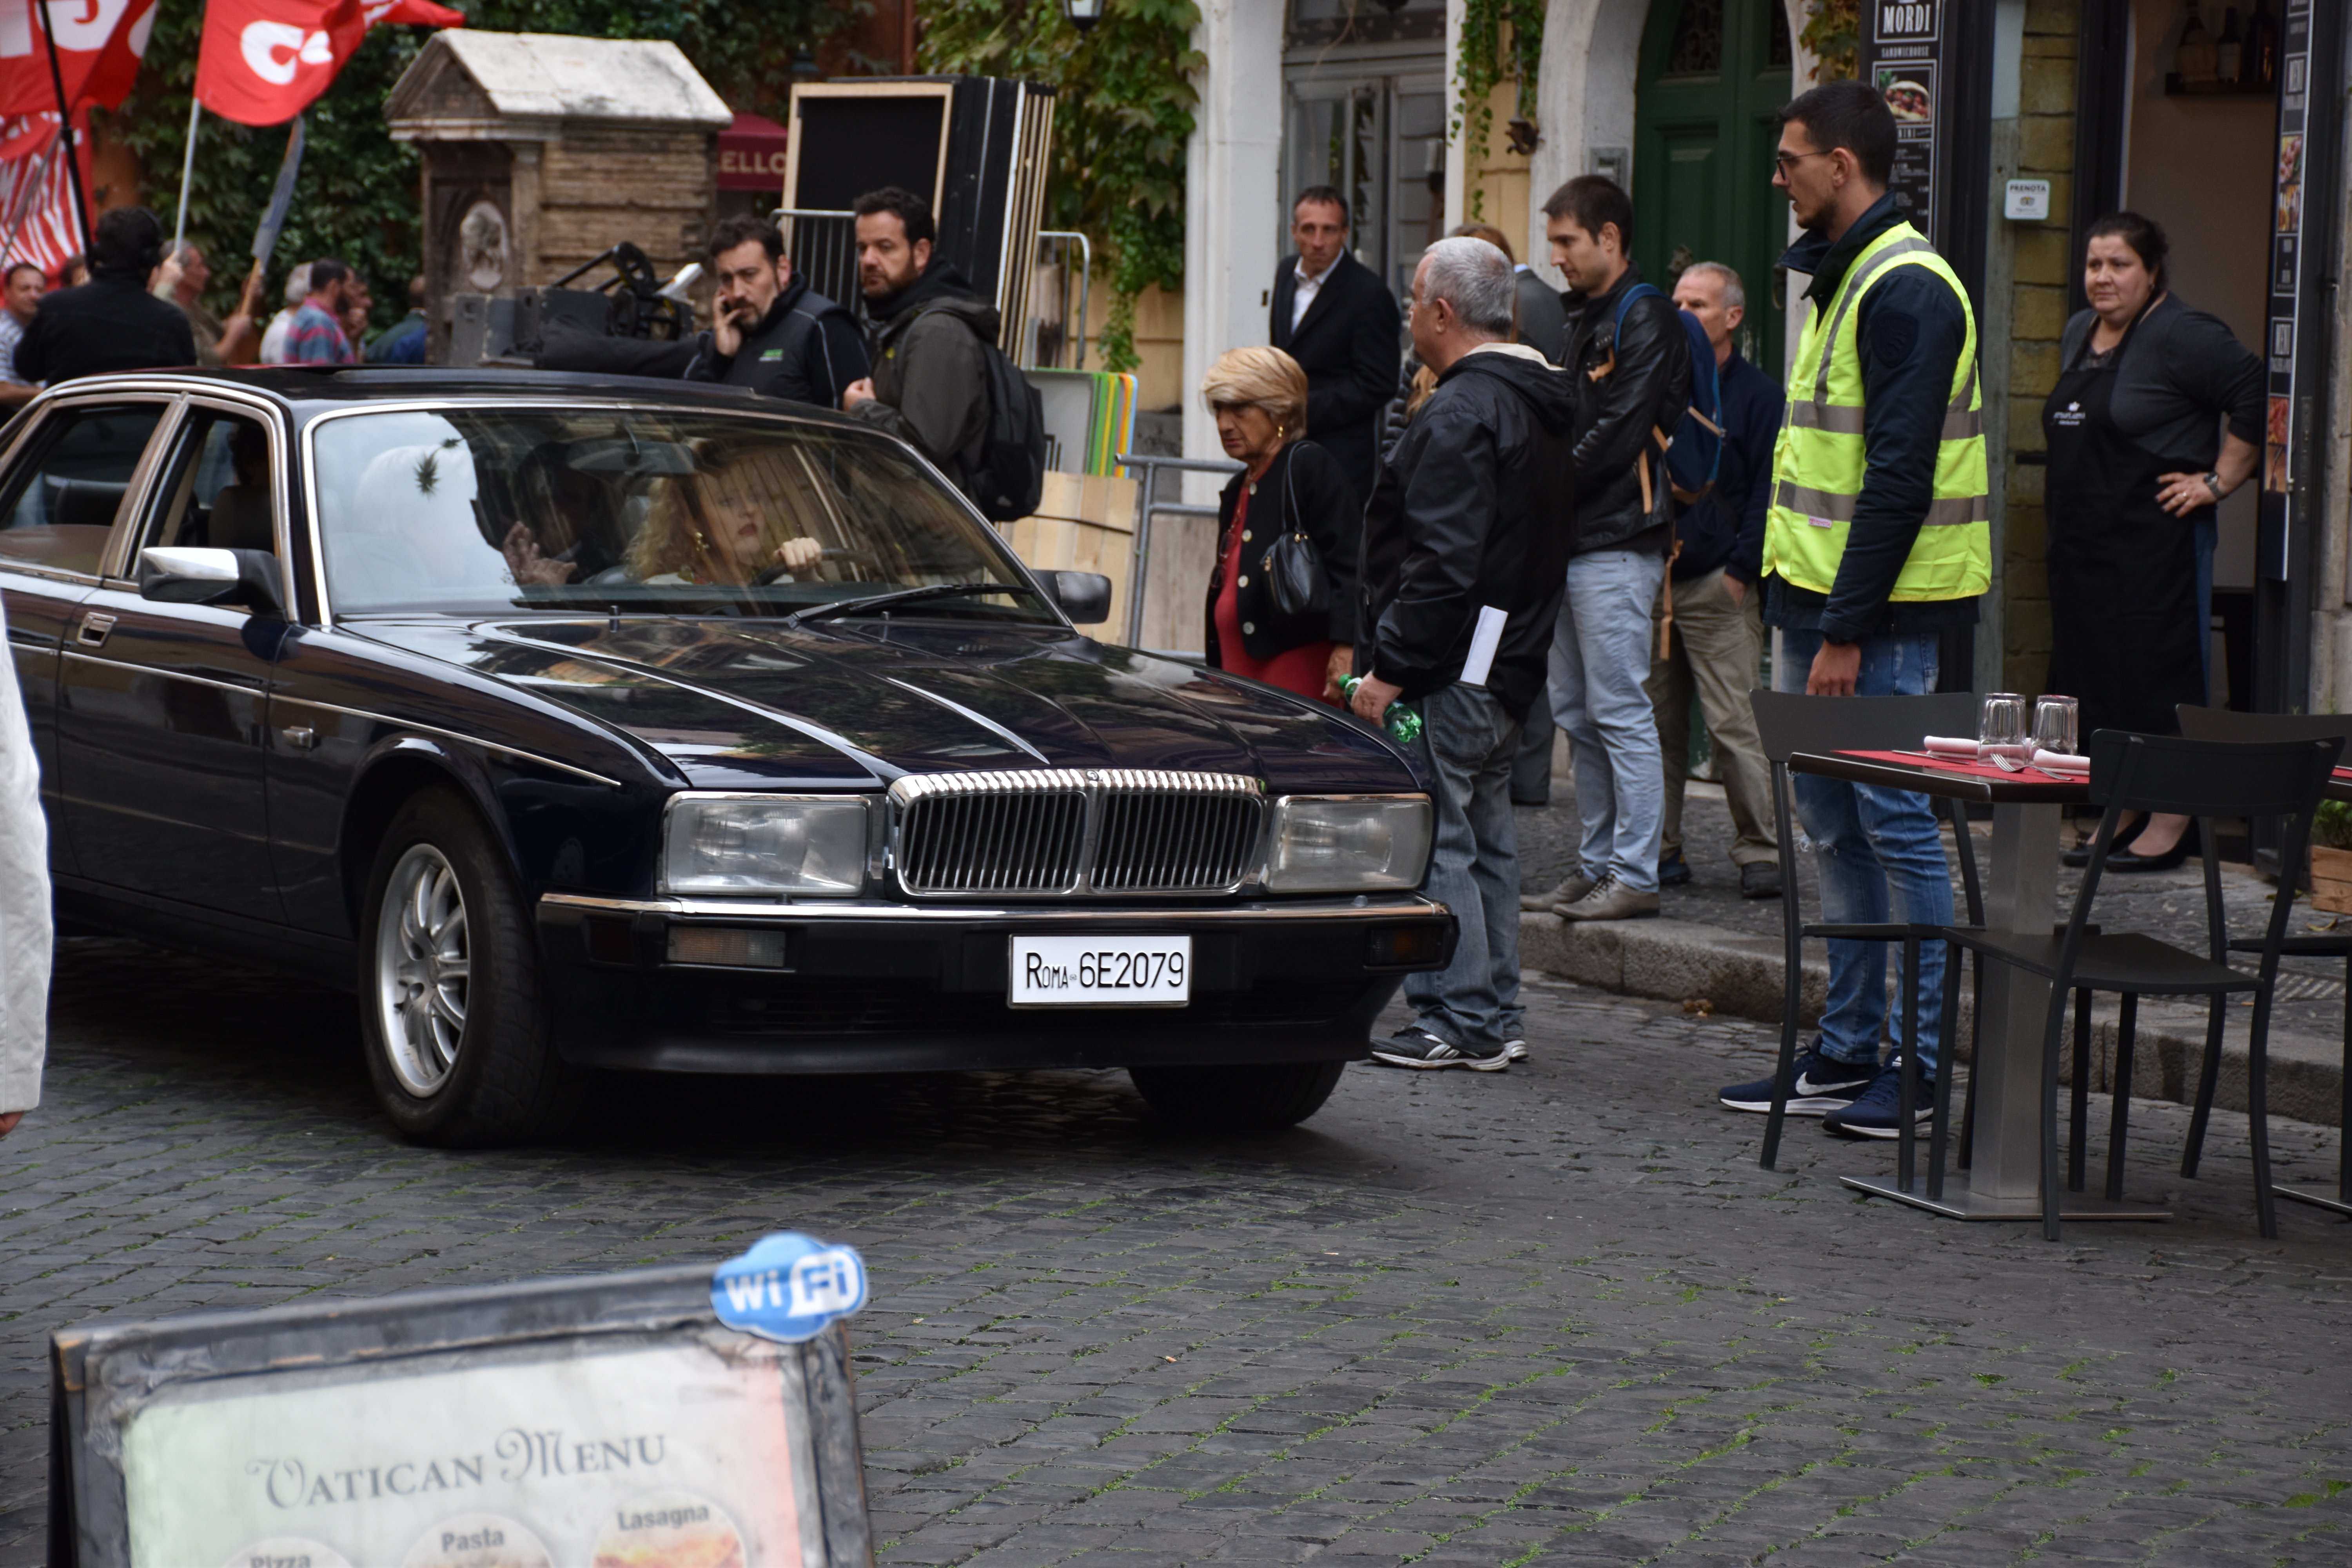 L'attrice Marina Rocco guida l'auto su cui c'è Bettino Craxi che sta lasciando l'Hotel Raphael